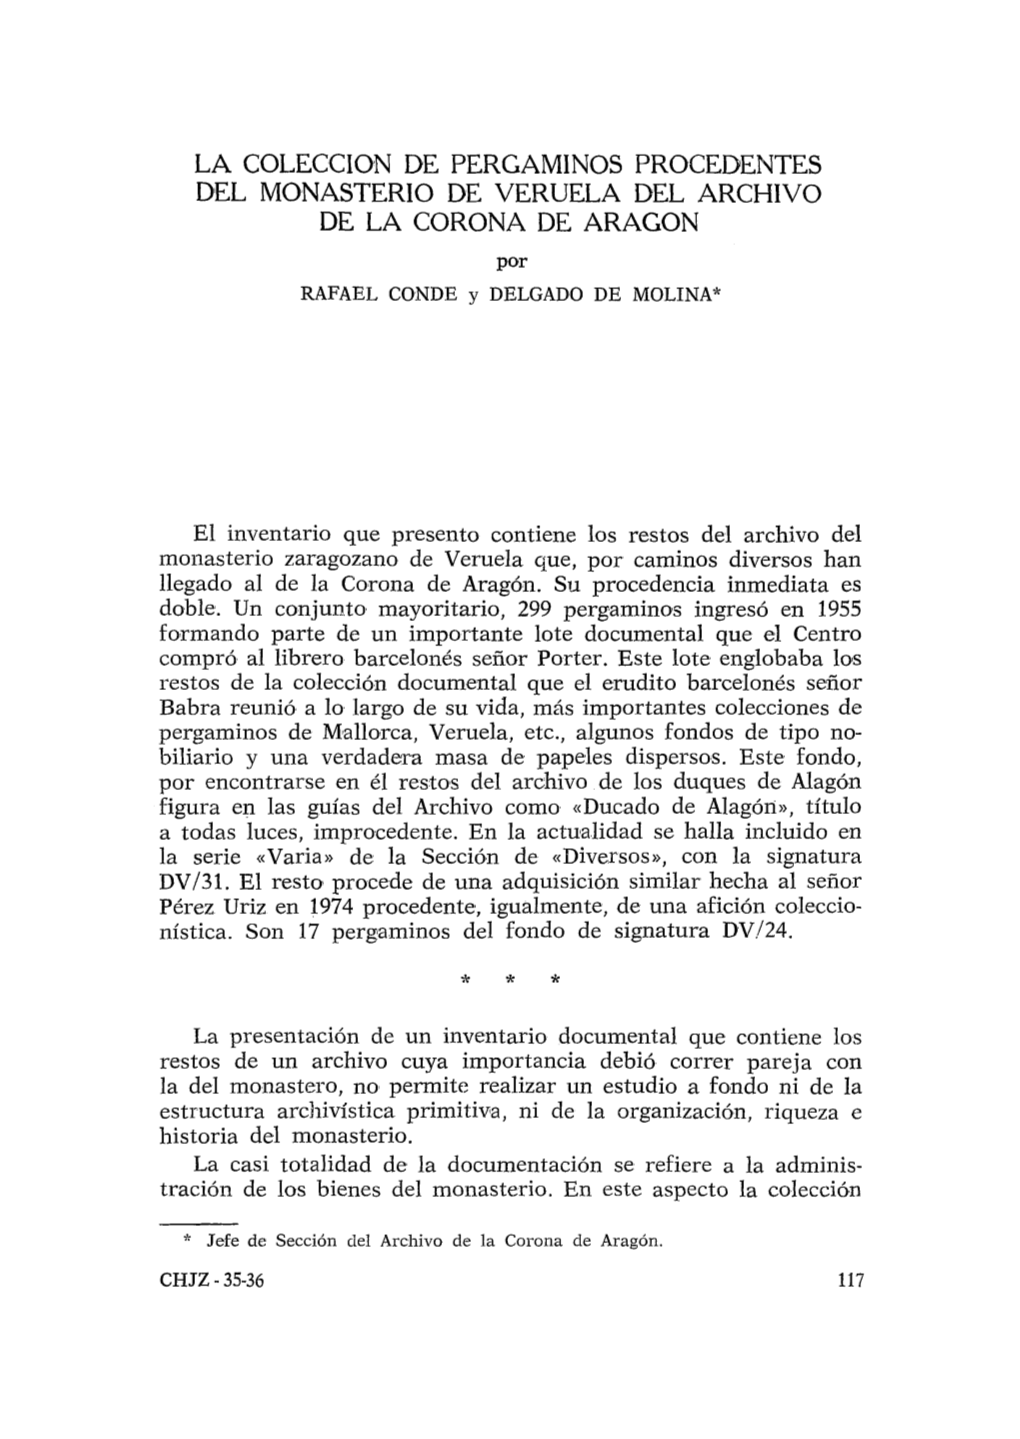 2. La Colección De Pergaminos Procedentes Del Monasterio De